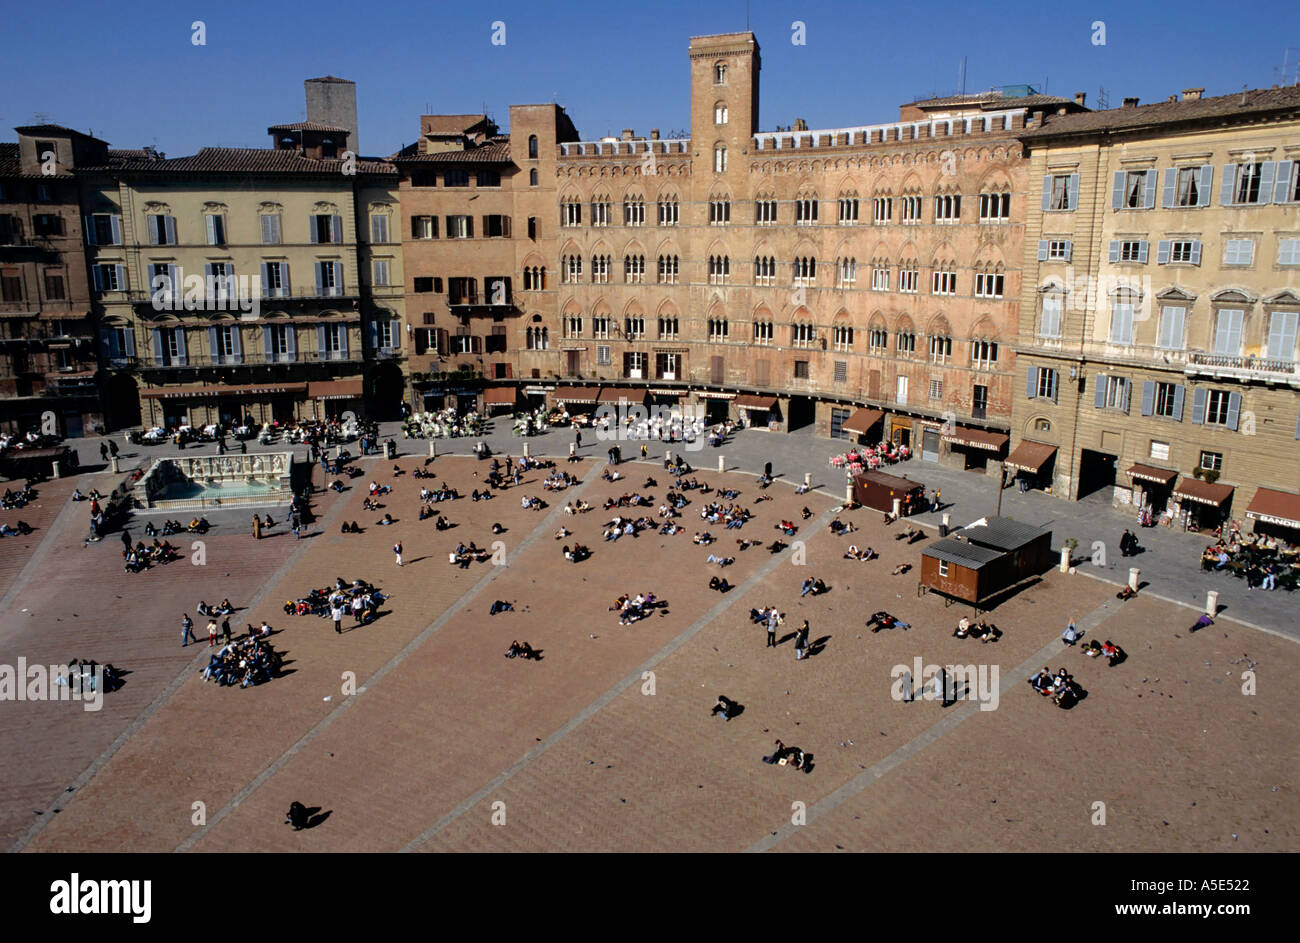 Menschen und Gebäude in der Piazza del Campo in Siena, Italien. Stockfoto